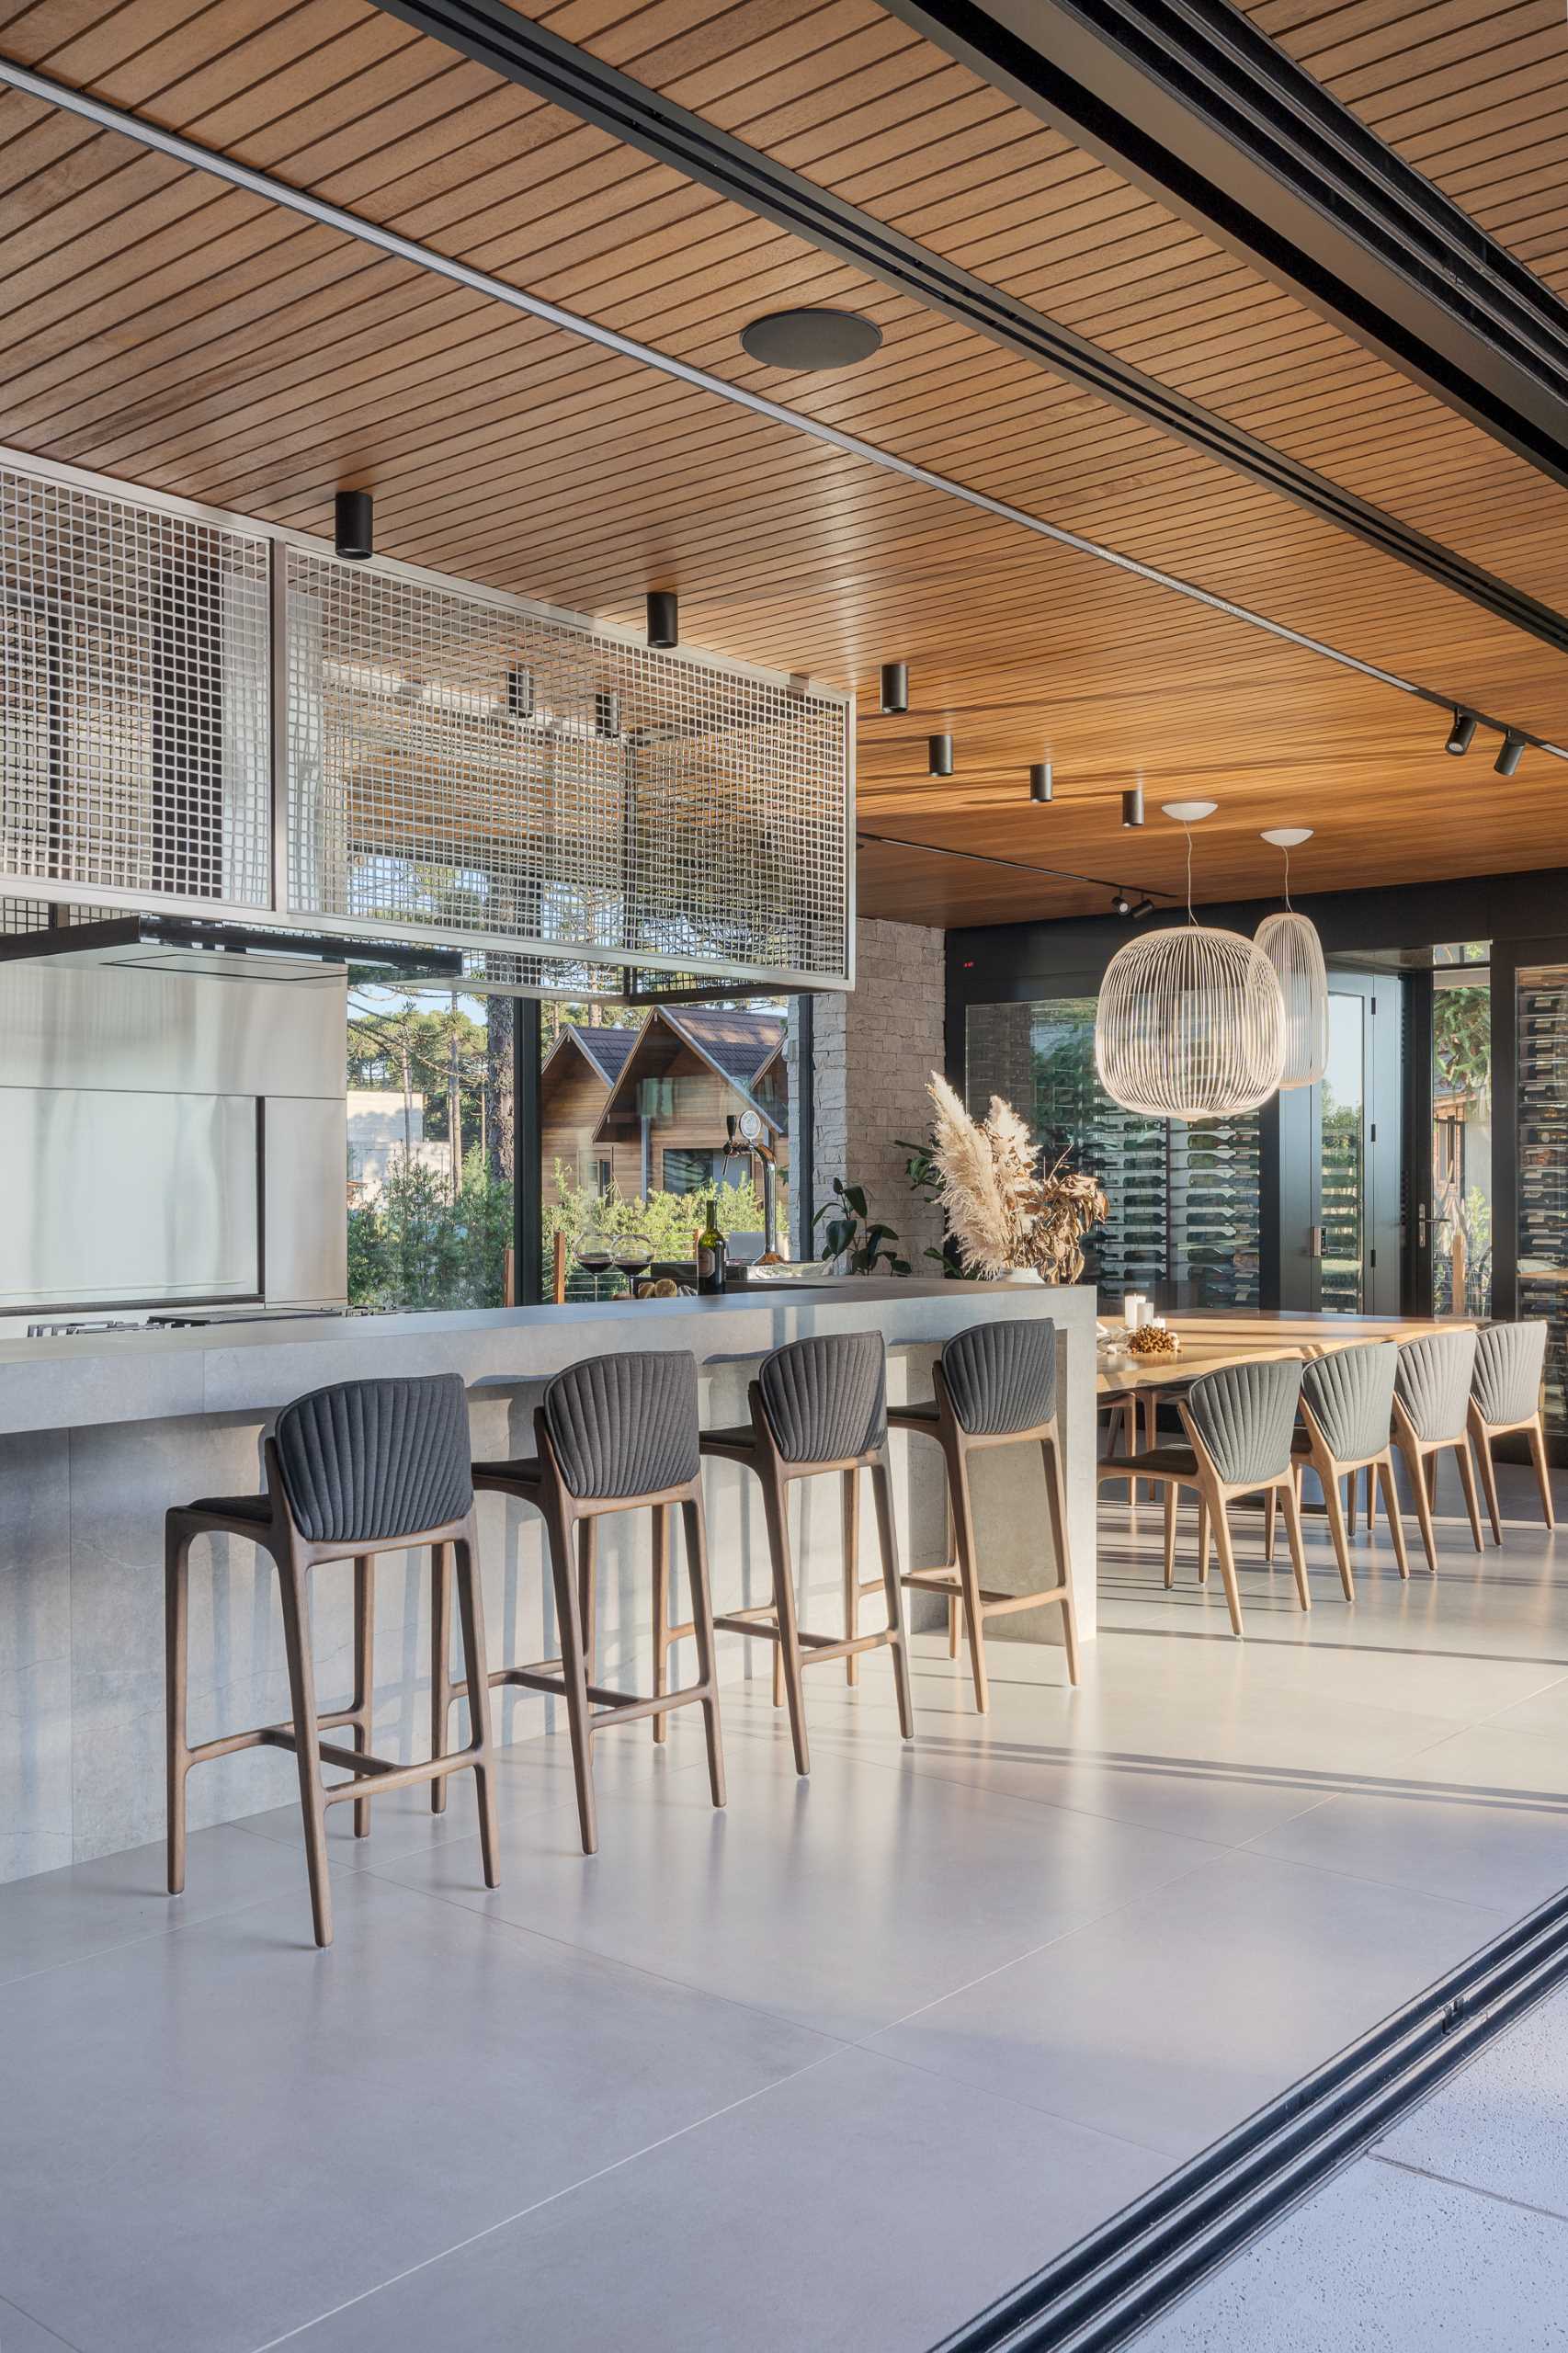 یک آشپزخانه مدرن با یک جزیره طول، که به یک میز ناهار خوری تبدیل می شود.